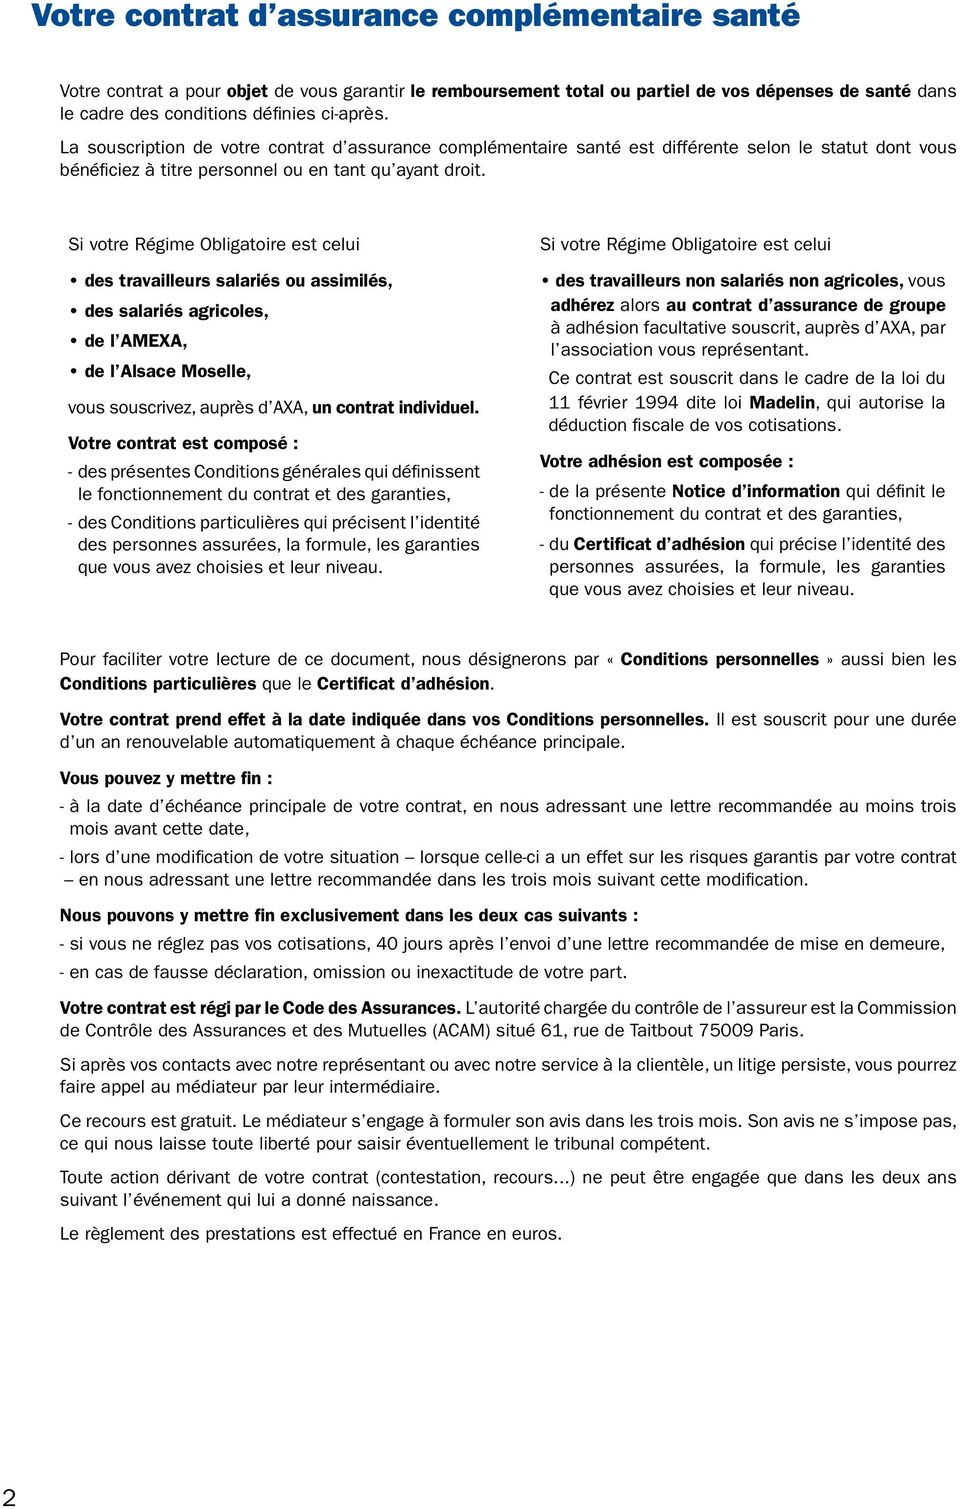 Si votre Régime Obligatoire est celui des travailleurs salariés ou assimilés, des salariés agricoles, de l AMEXA, de l Alsace Moselle, vous souscrivez, auprès d AXA, un contrat individuel.